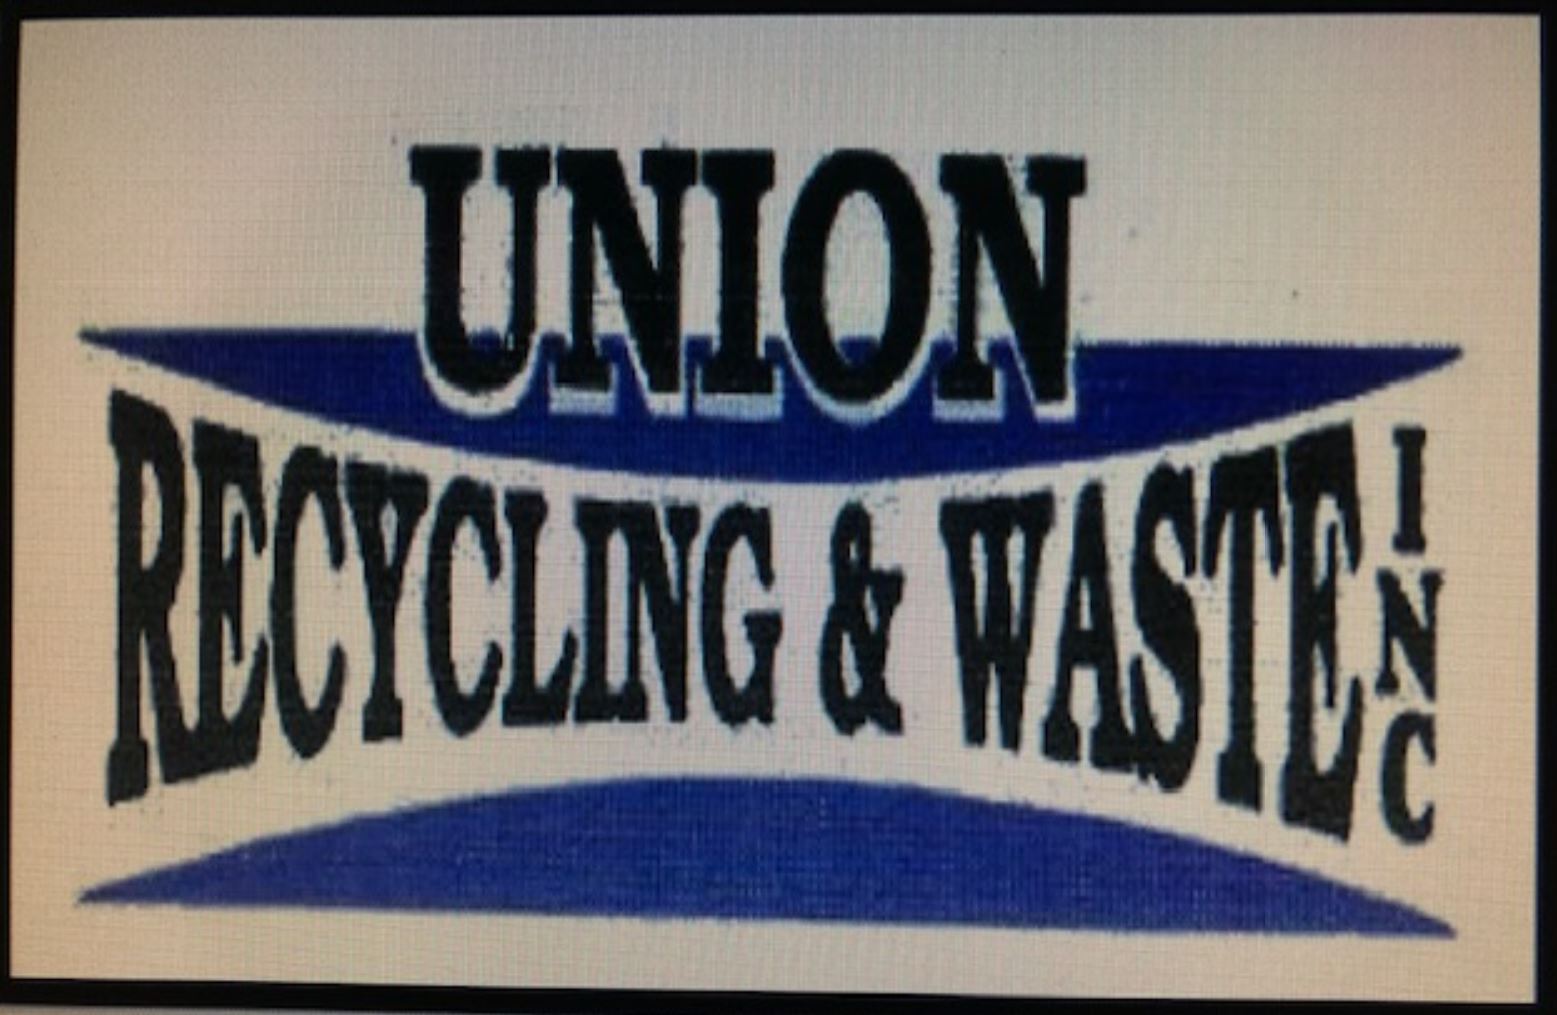 Union Recycling